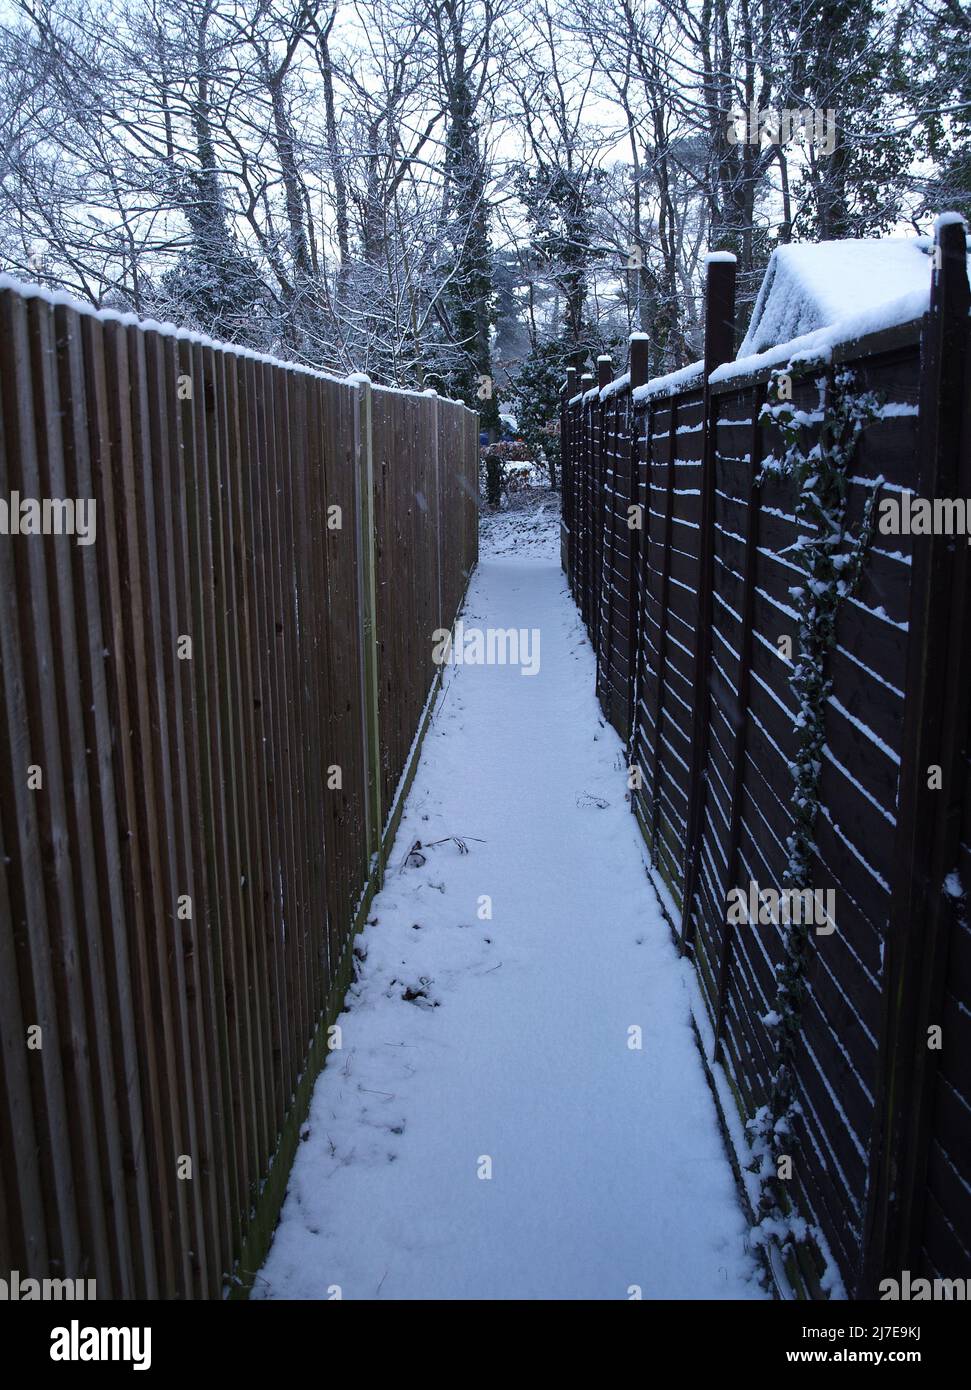 Allée entre les clôtures de jardin après de fortes chutes de neige à Bursledon, Southampton, Hampshire, Angleterre, Royaume-Uni Banque D'Images